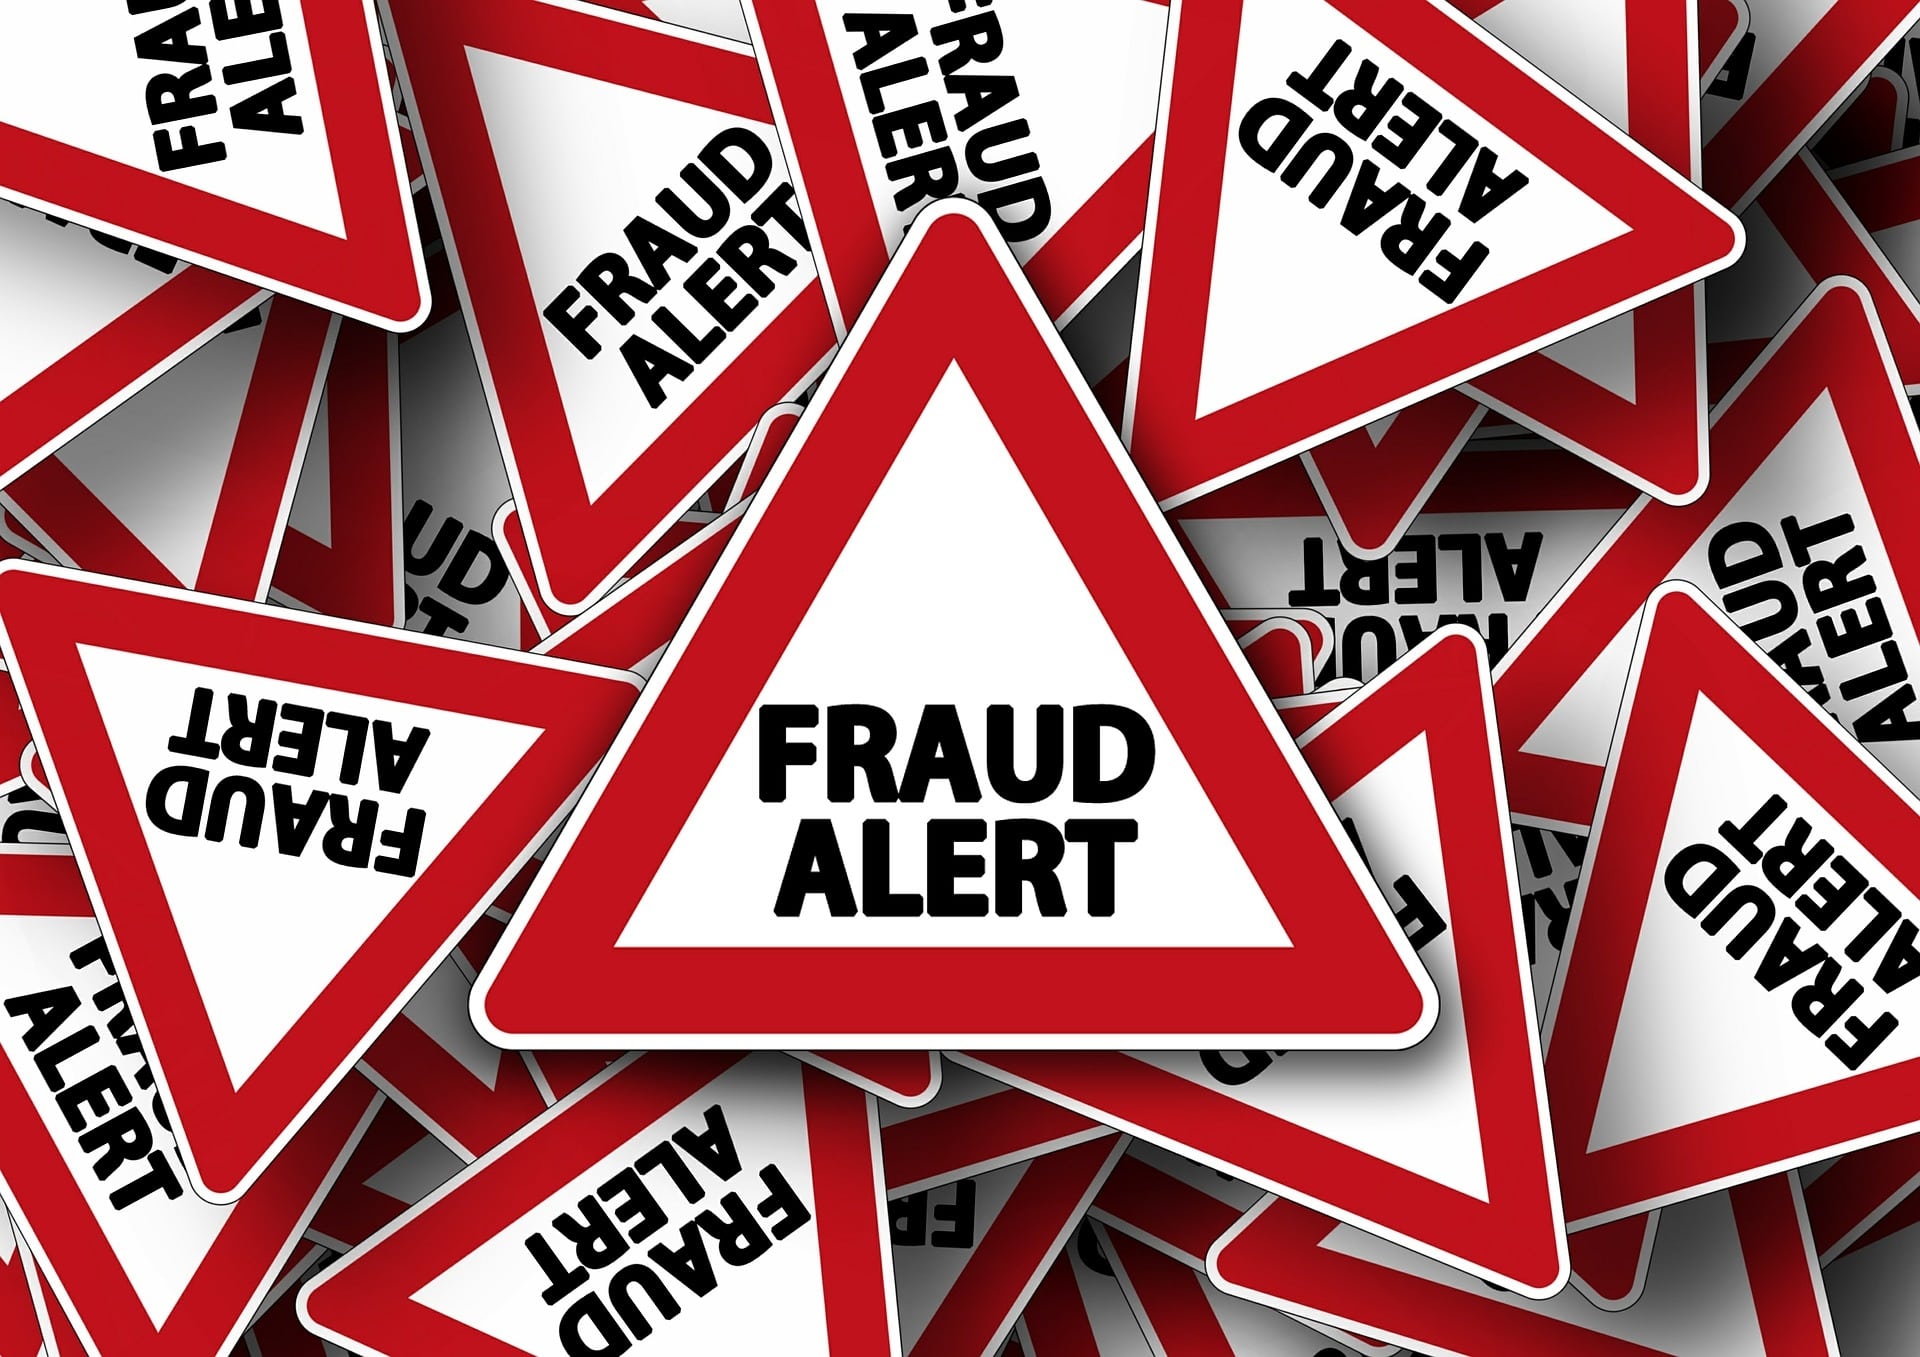 fraud alert signs